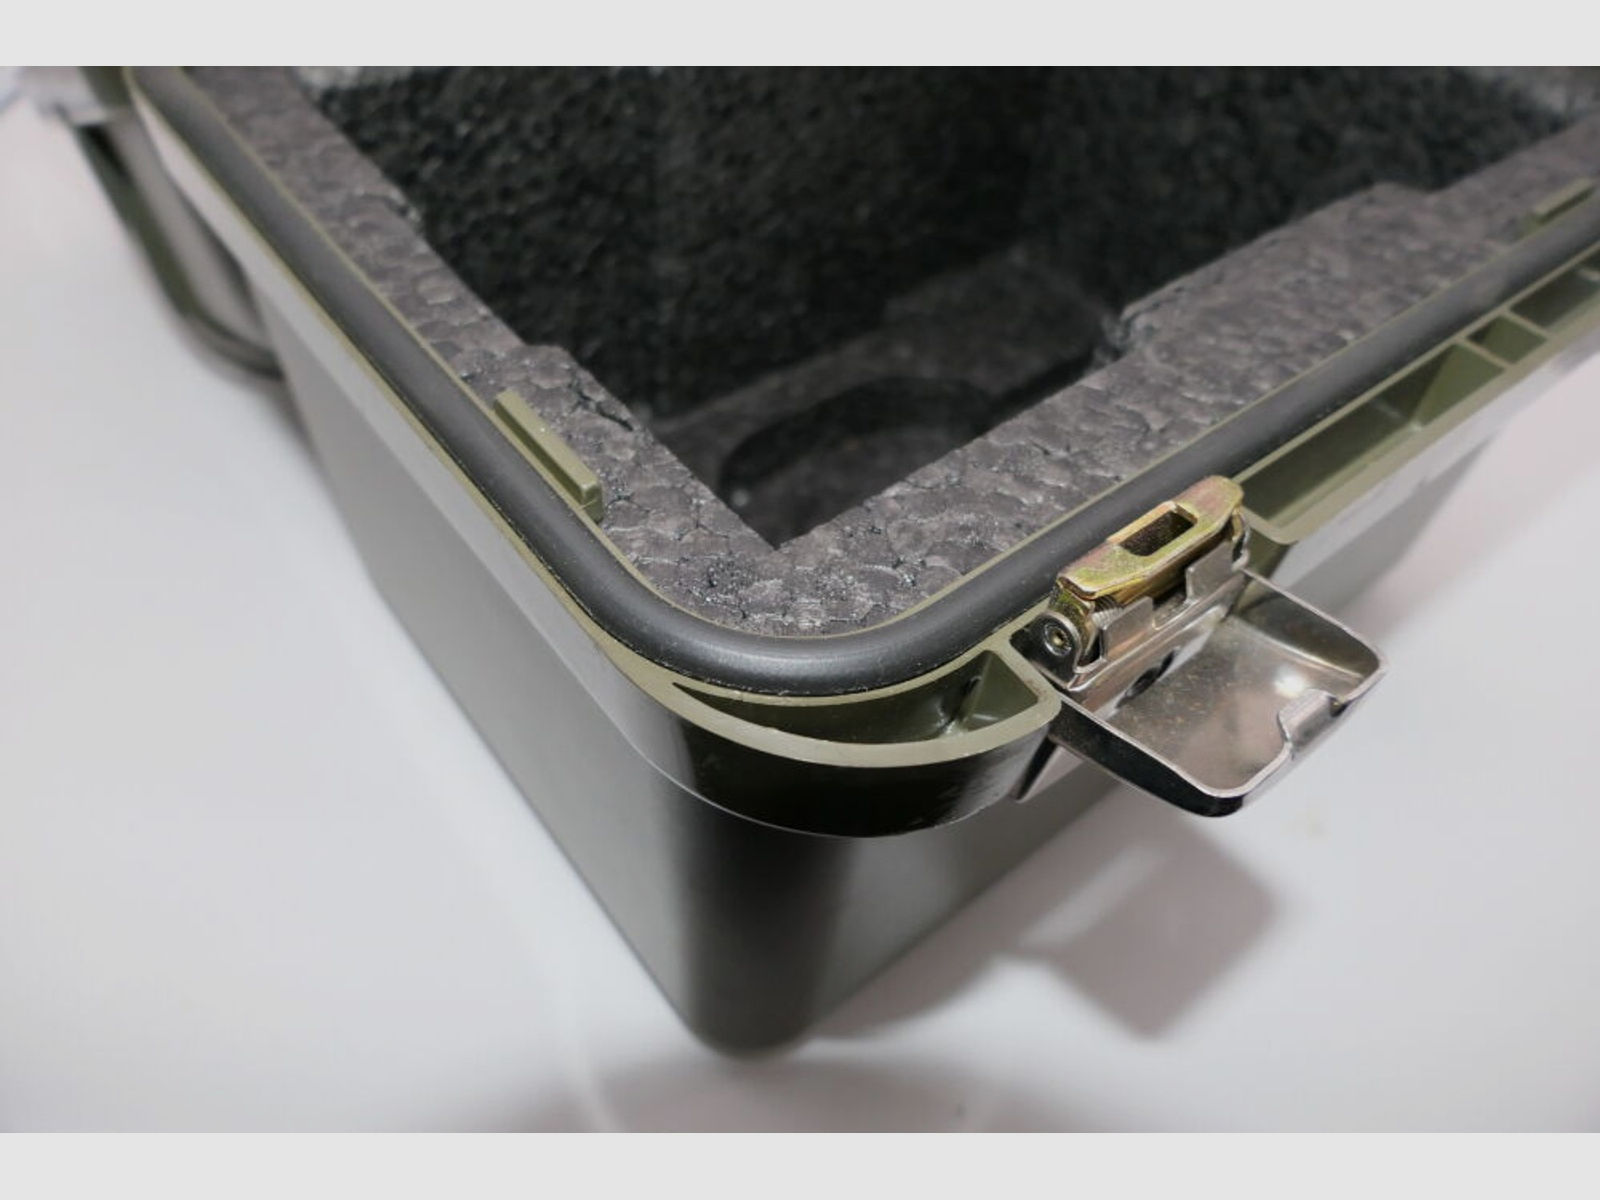 BW	 Original Koffer für Nachtsischtgerät aus Behördenbeständen